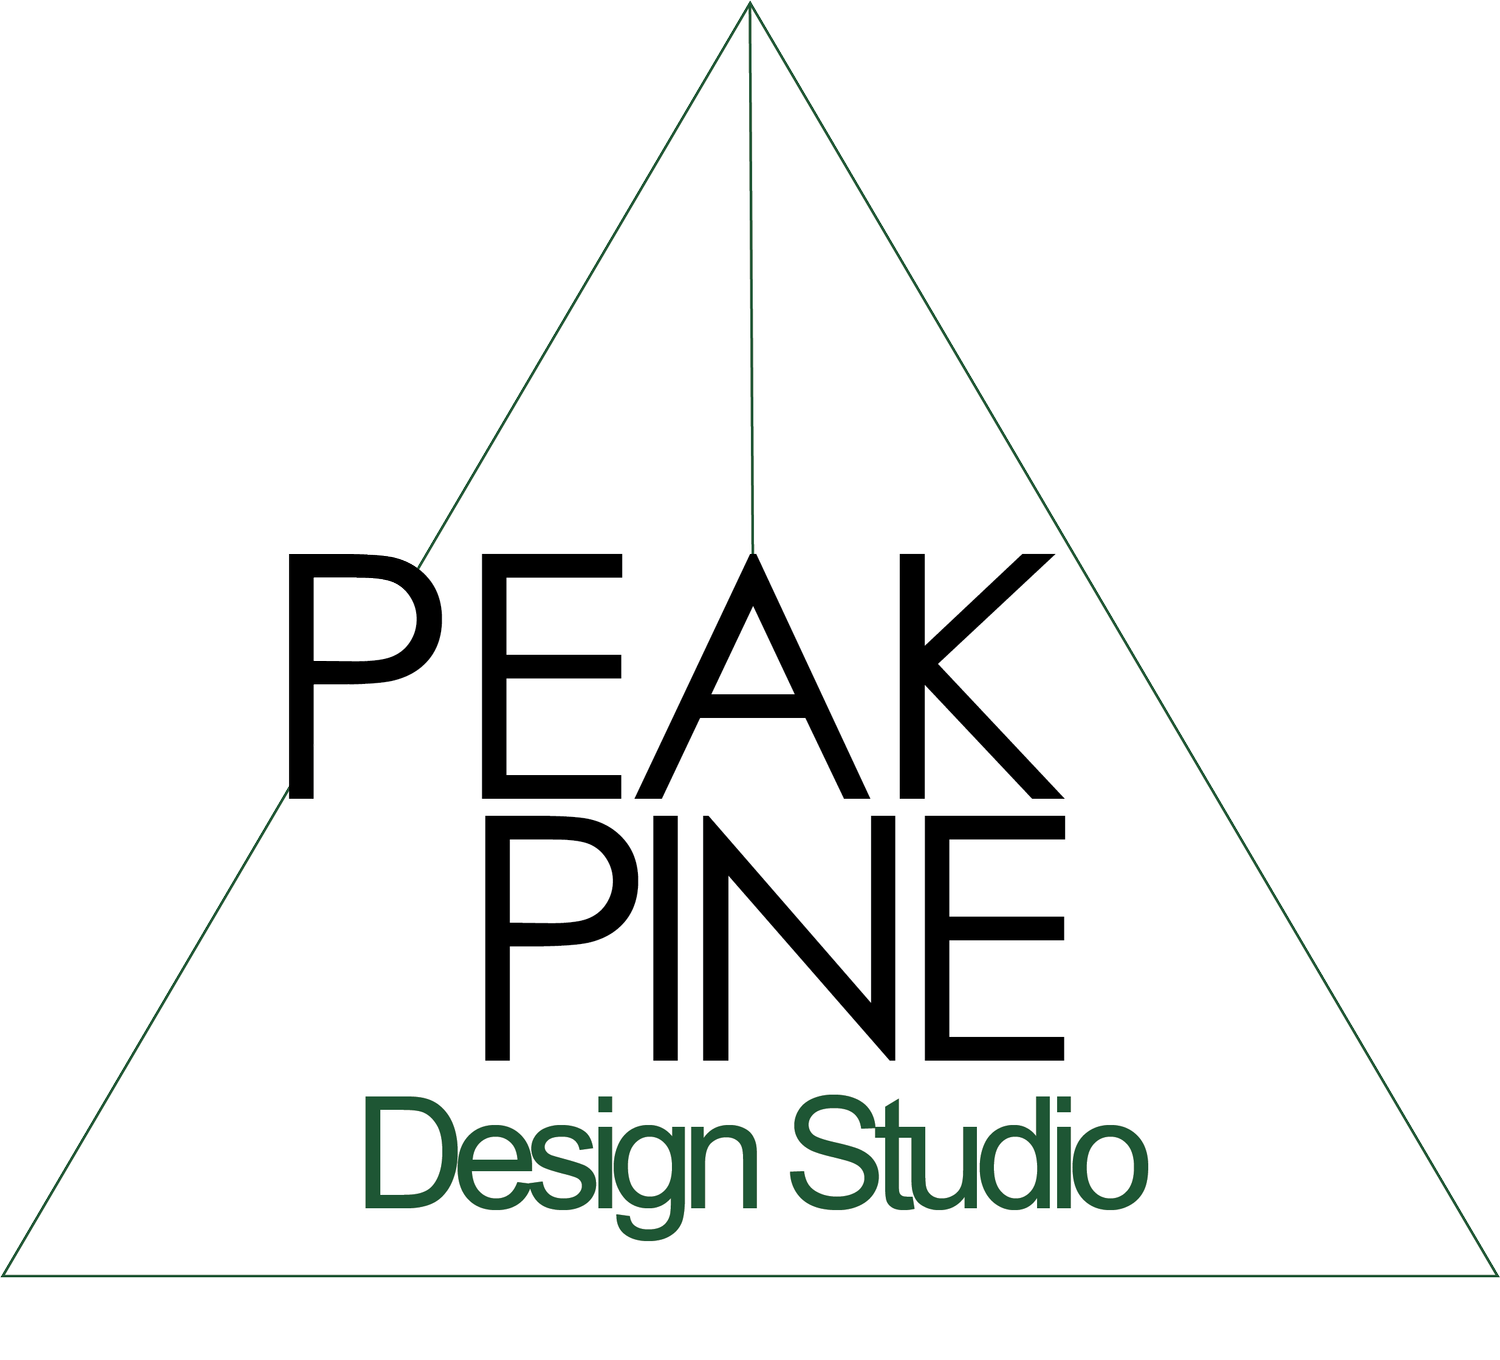 PeakPine Design Studio